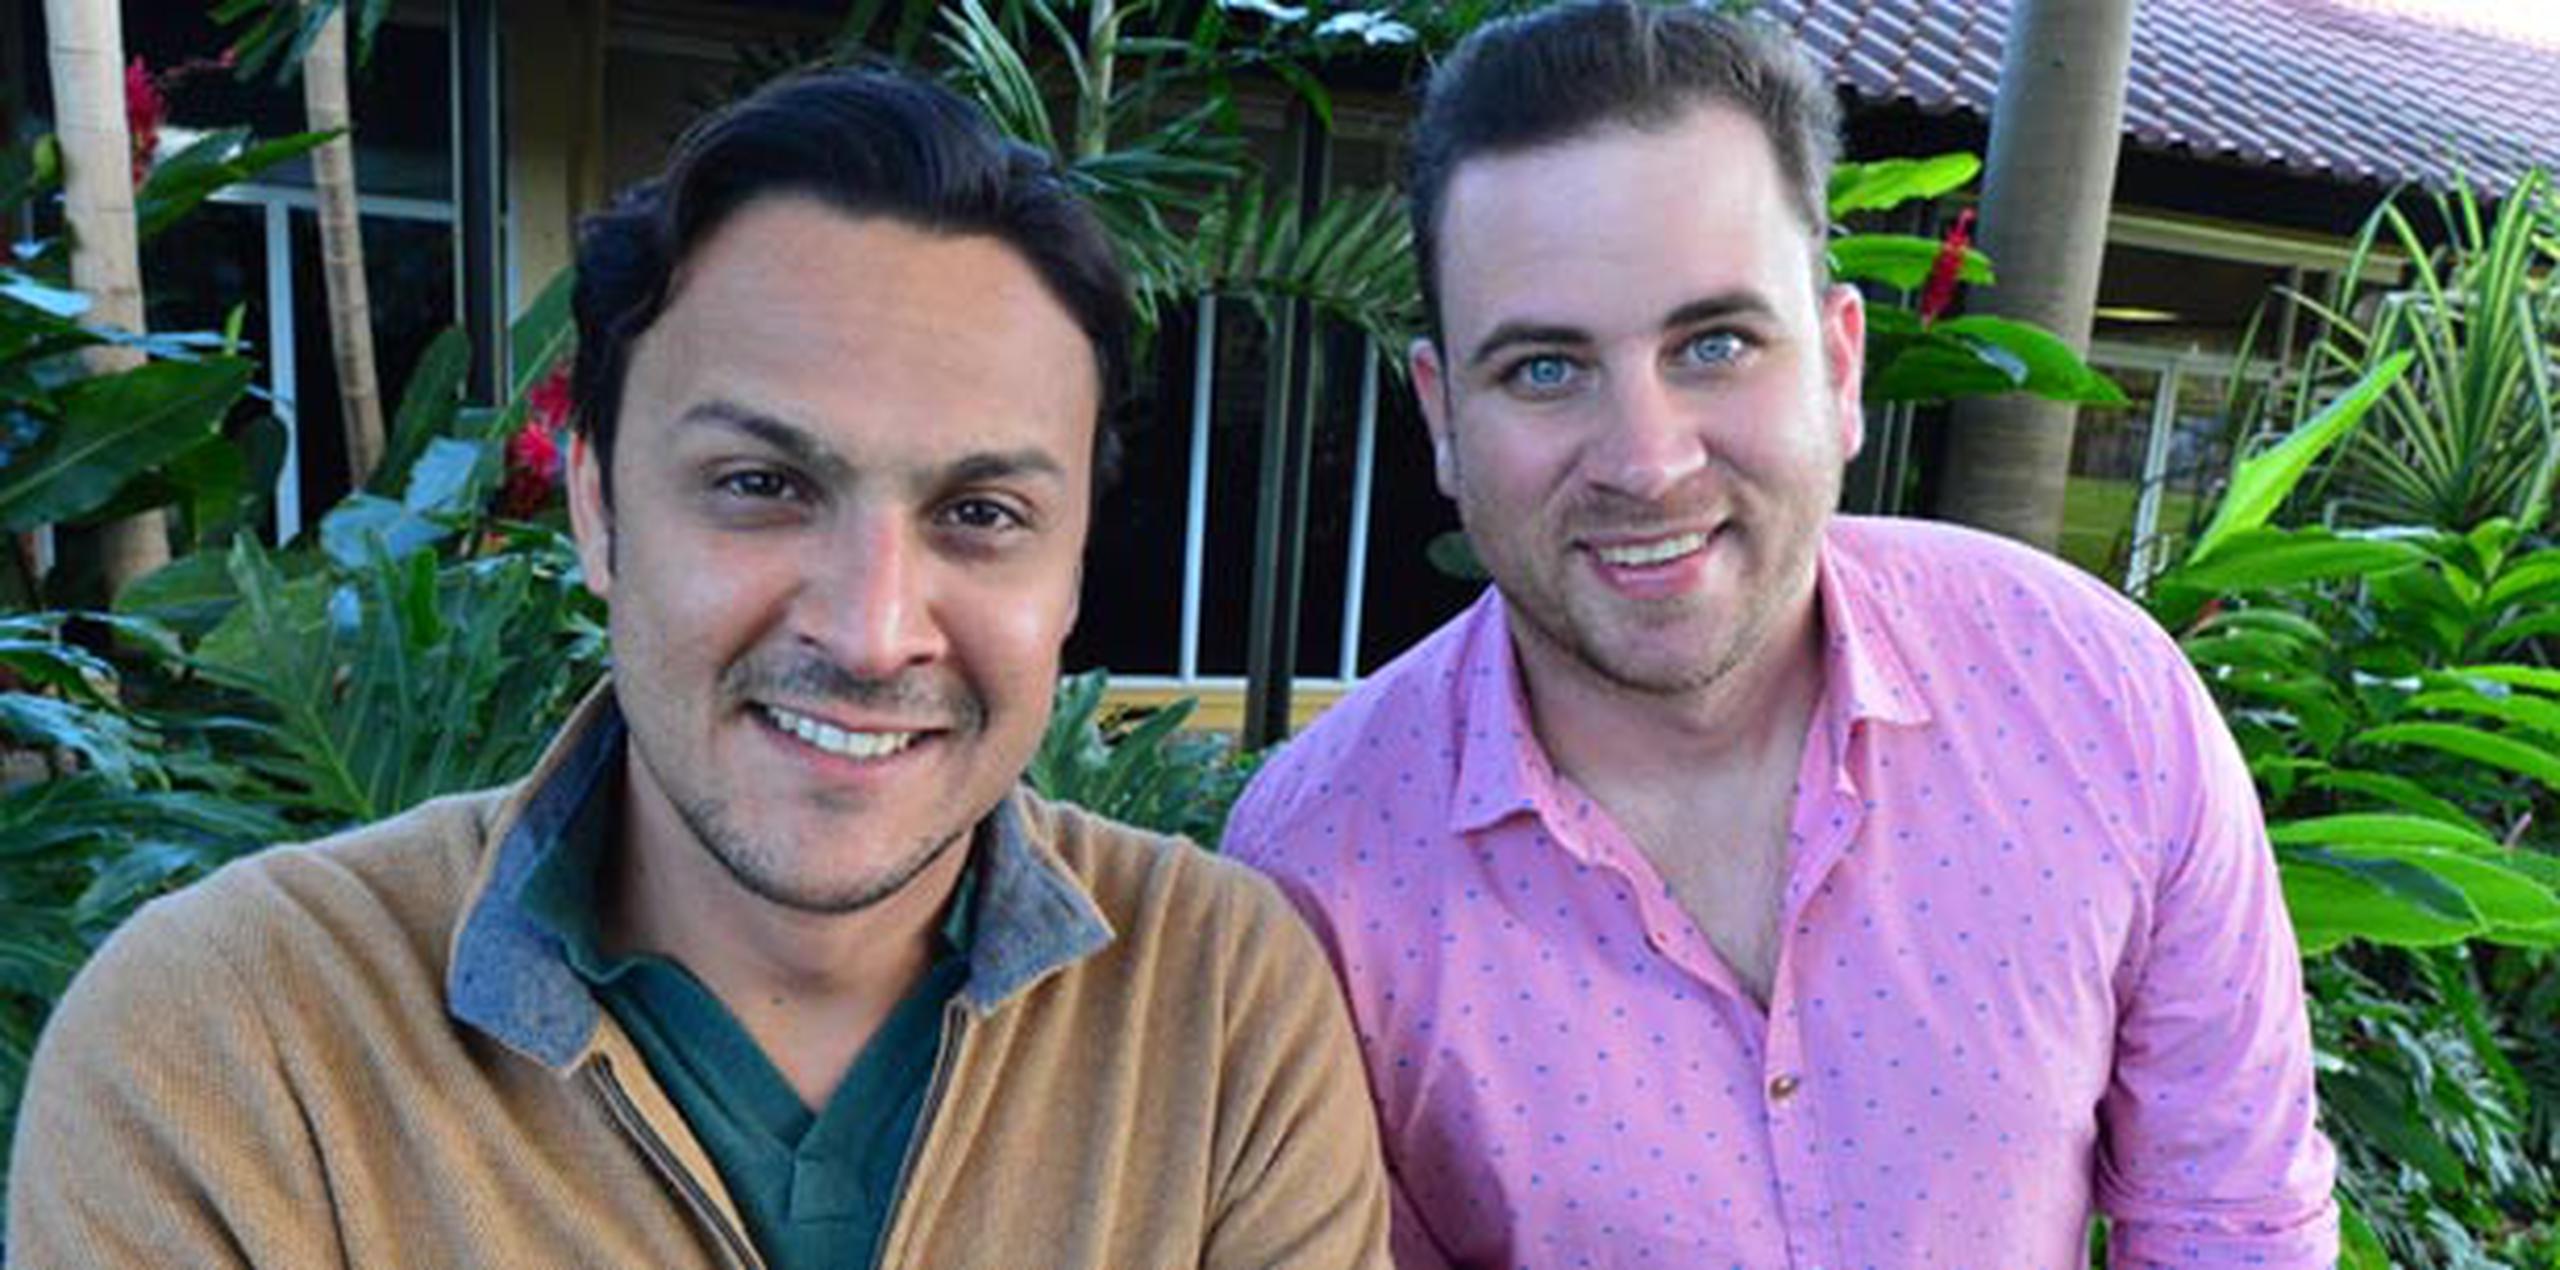 Los comediantes Francis Rosas y Danilo Beauchamp conducirán el espacio de juegos “Gana con ganas”.  (luis.alcaladelolmo@gfrmedia.com)